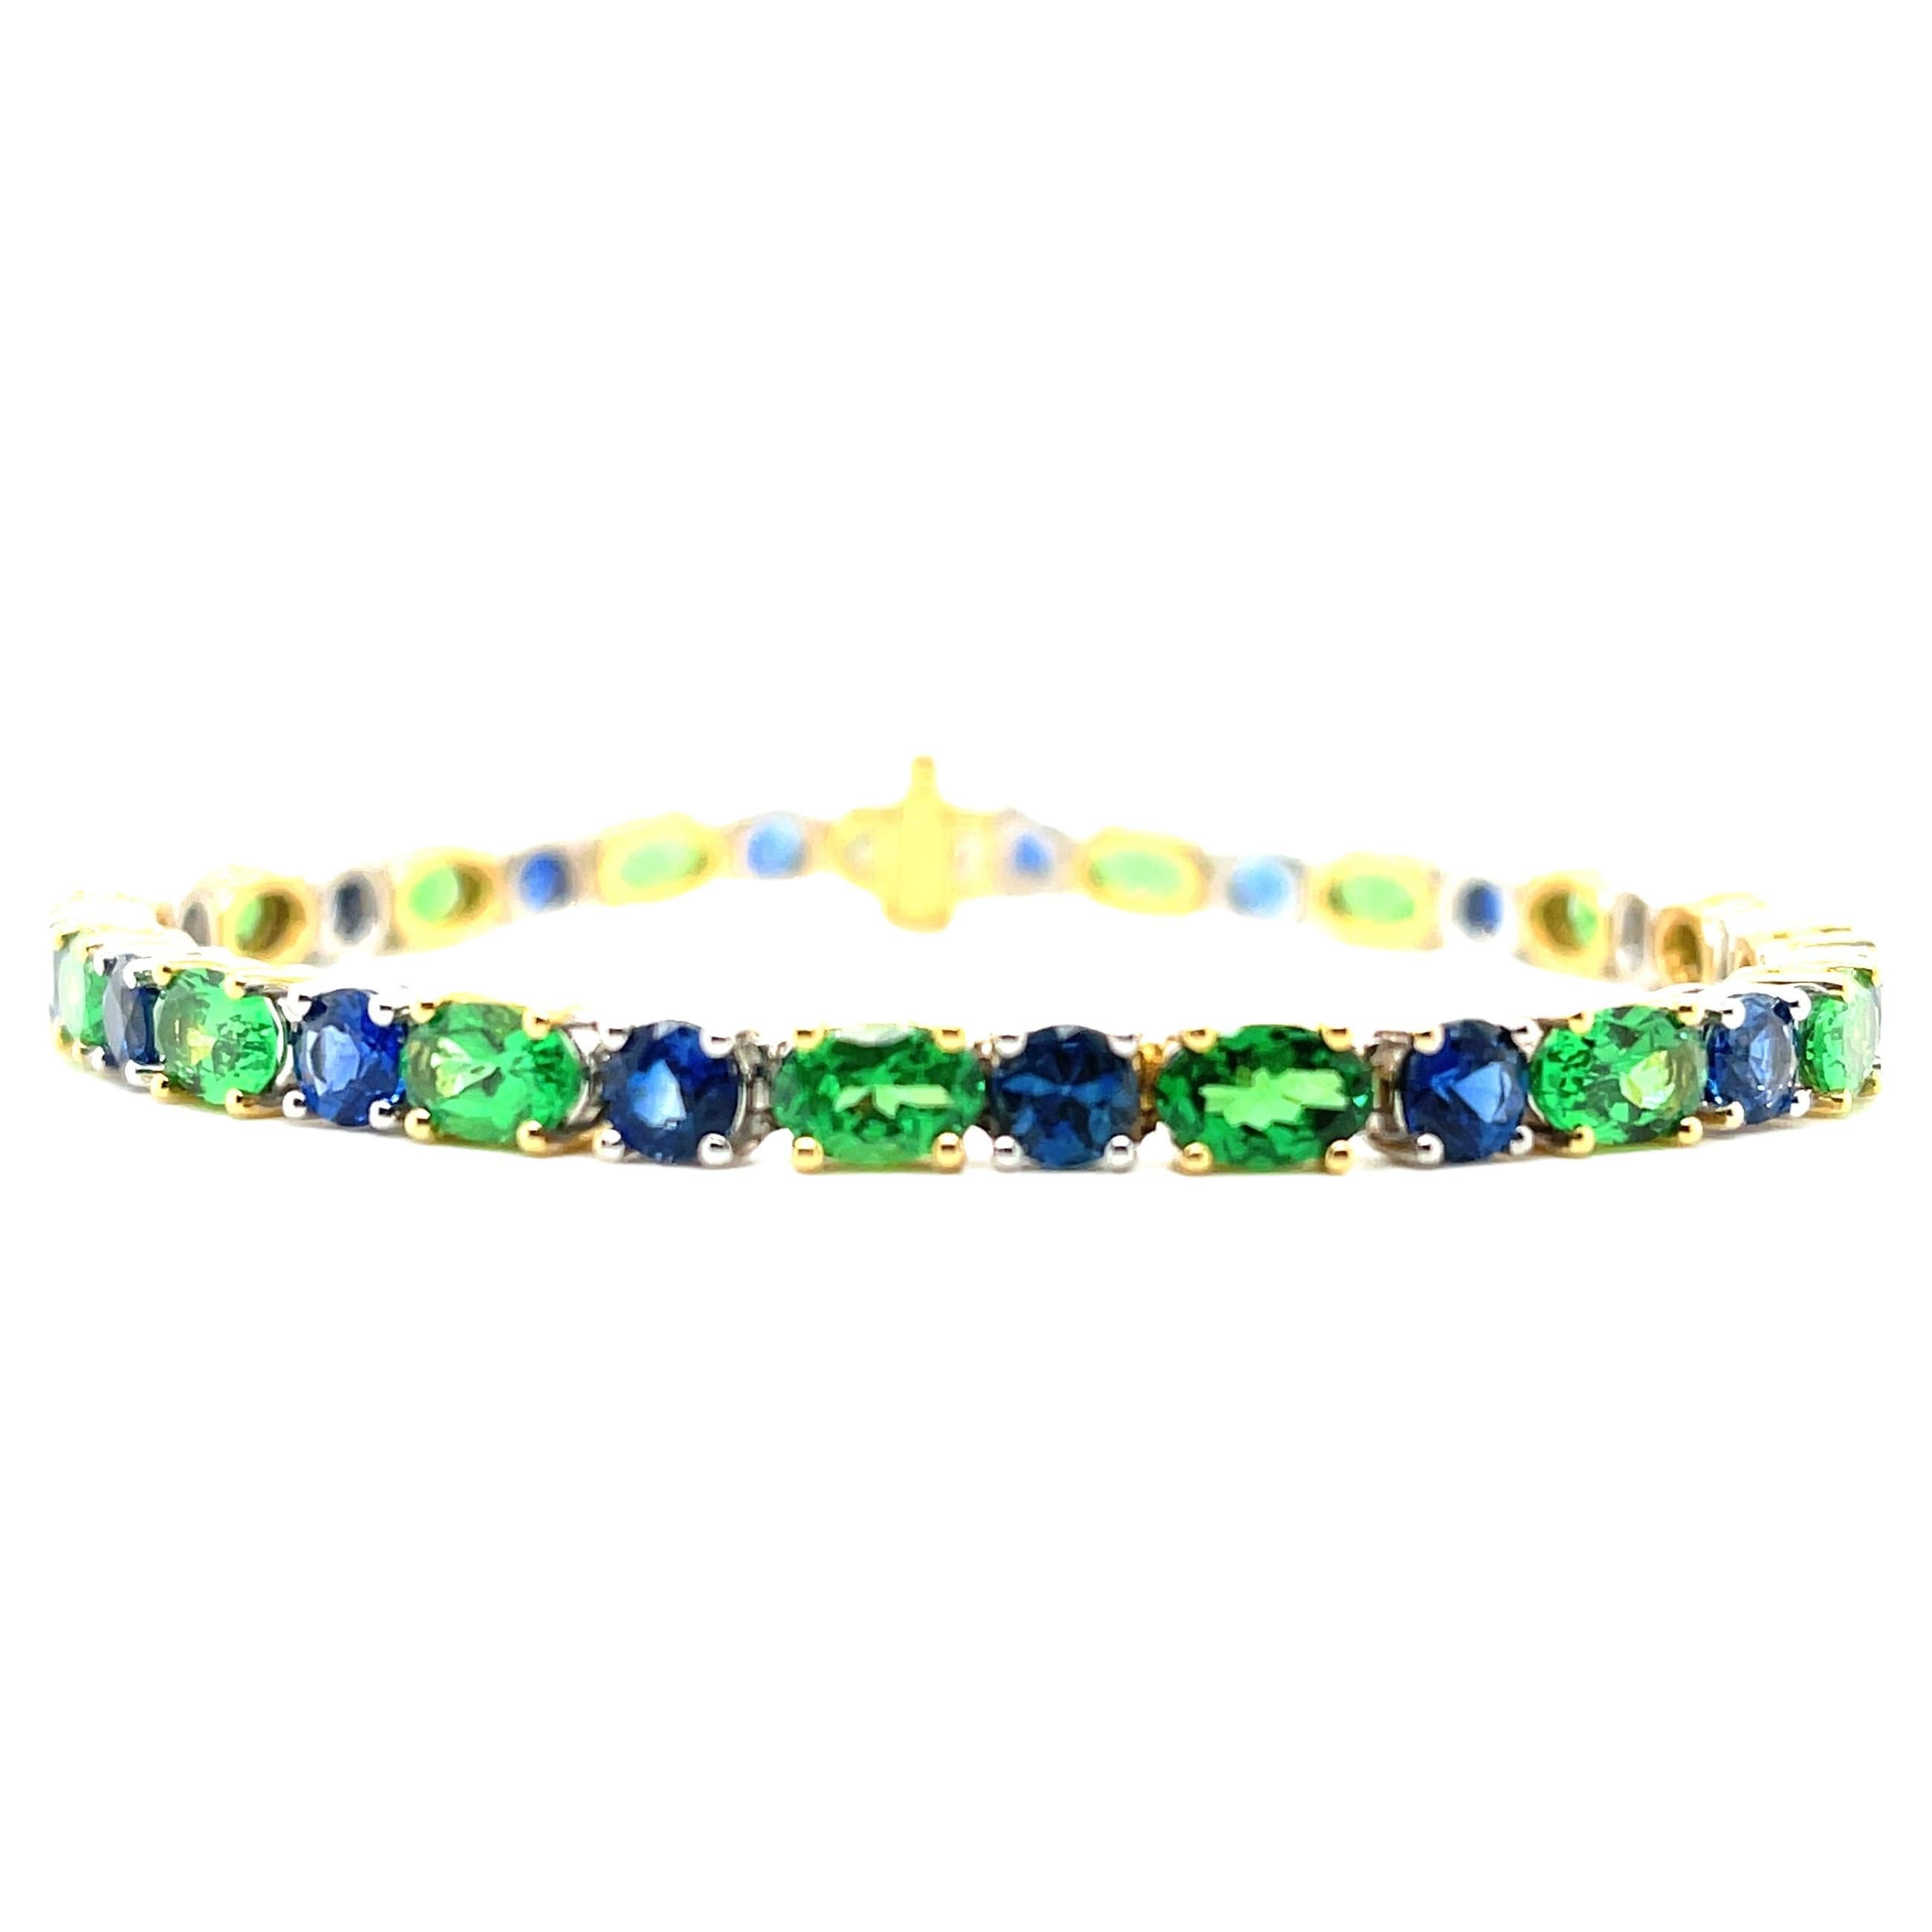 Dieses atemberaubende Gliederarmband im Tennis-Stil bietet eine funkelnde Kollektion von blauen Saphiren und grünen Tsavorit-Granaten in 18 Karat Weiß- und Gelbgold! Die blauen Saphire sind diamantgeschliffen, um ein Maximum an Brillanz und